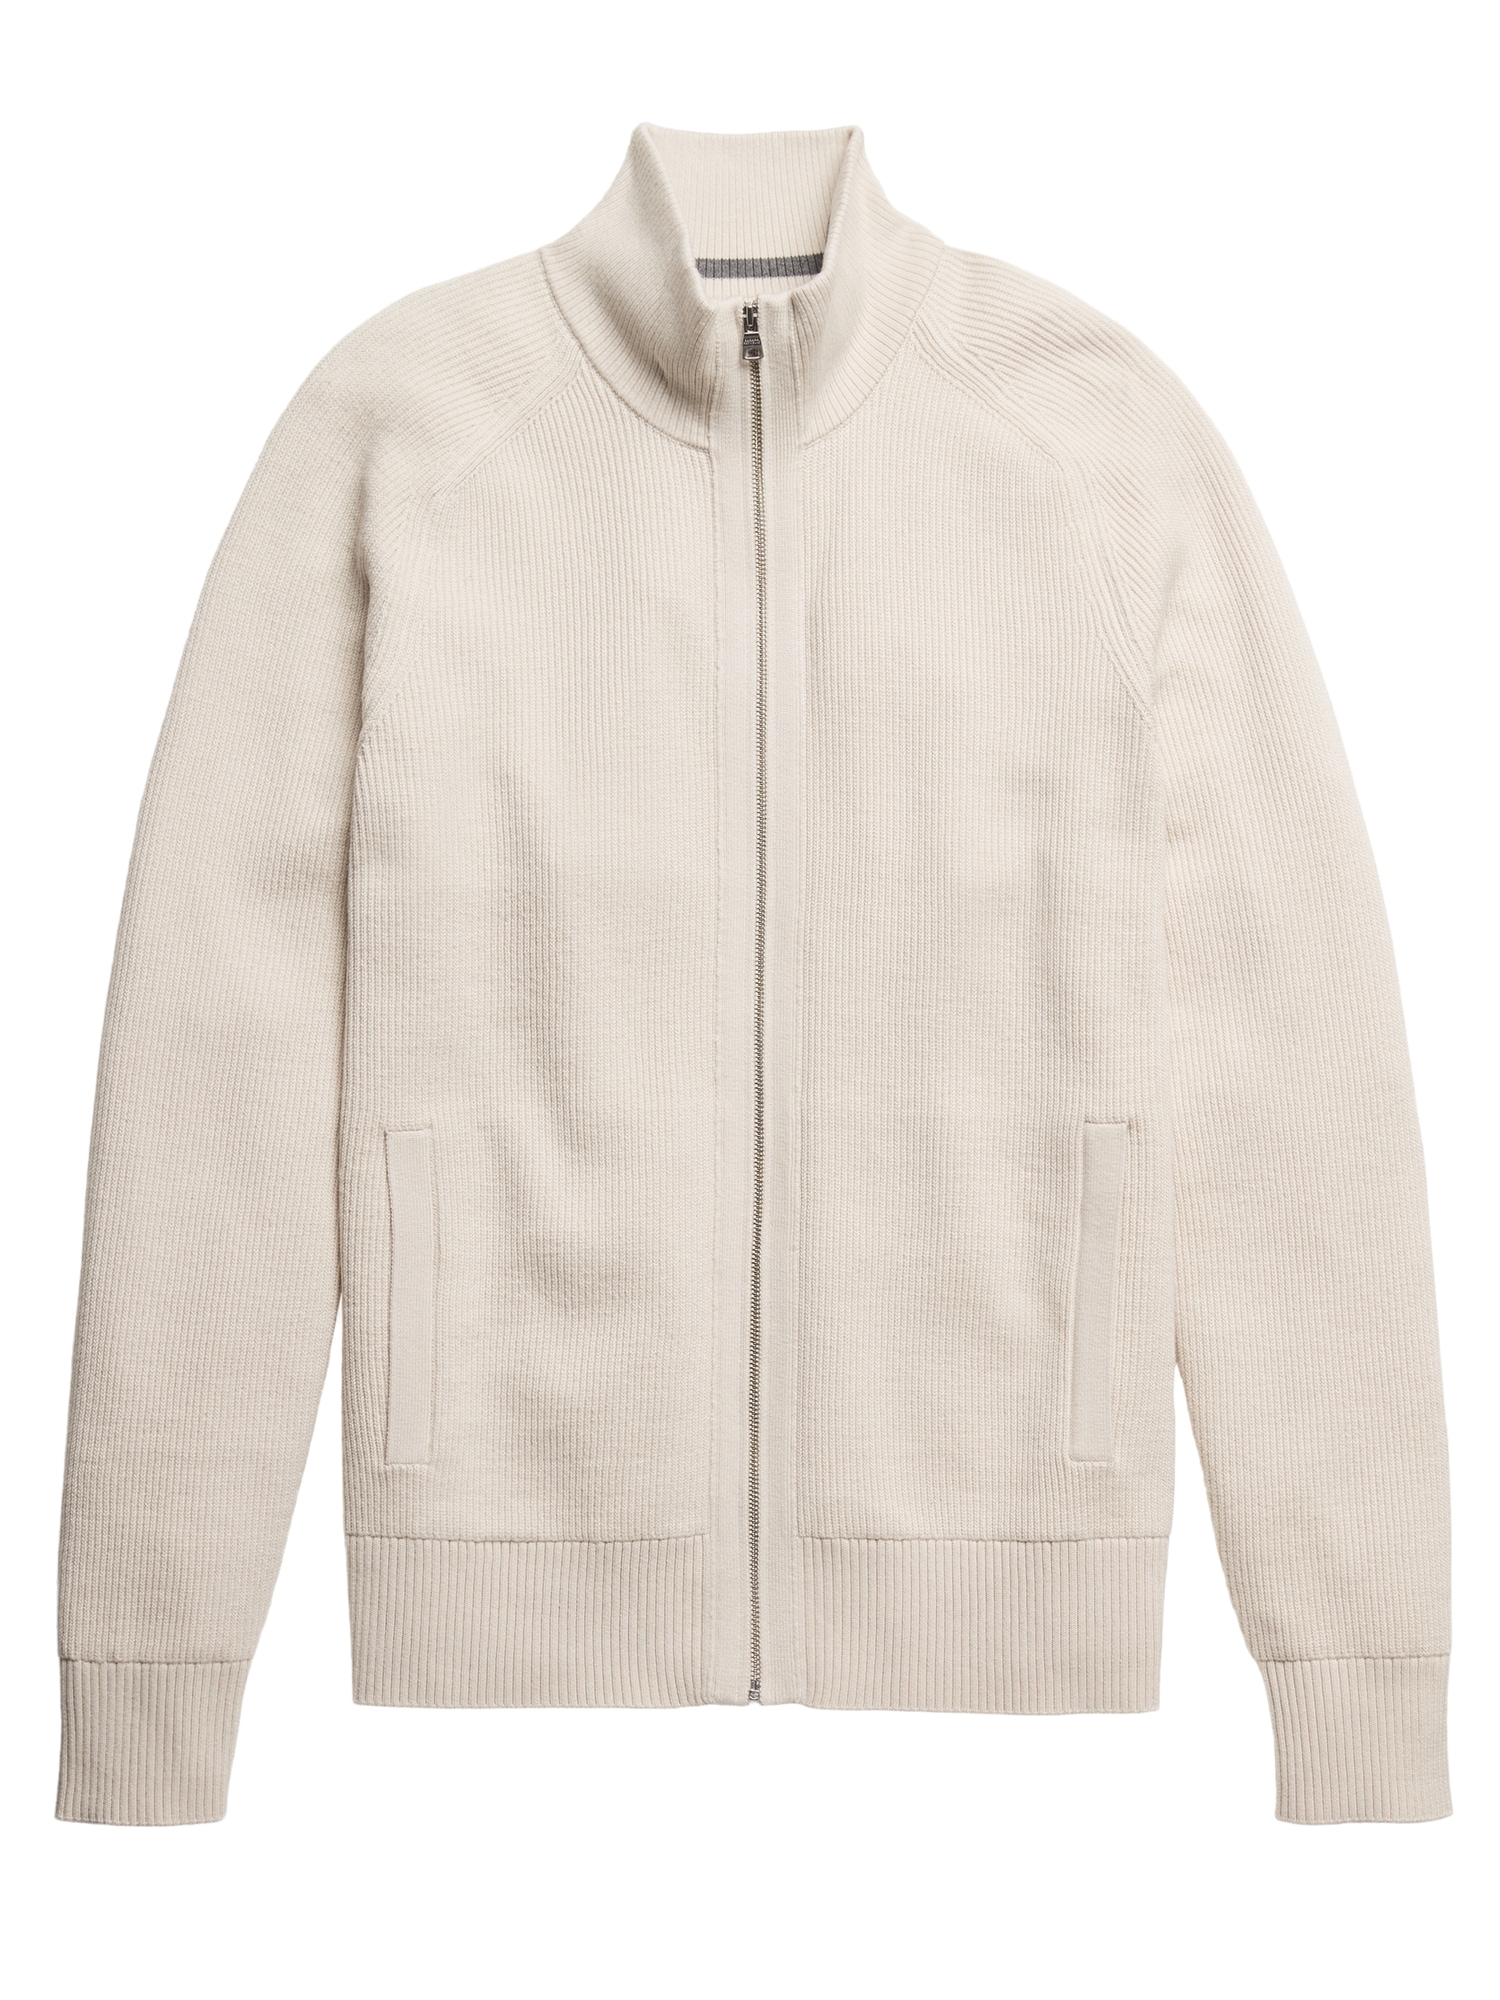 SUPIMA® Cotton Ribbed Sweater Jacket